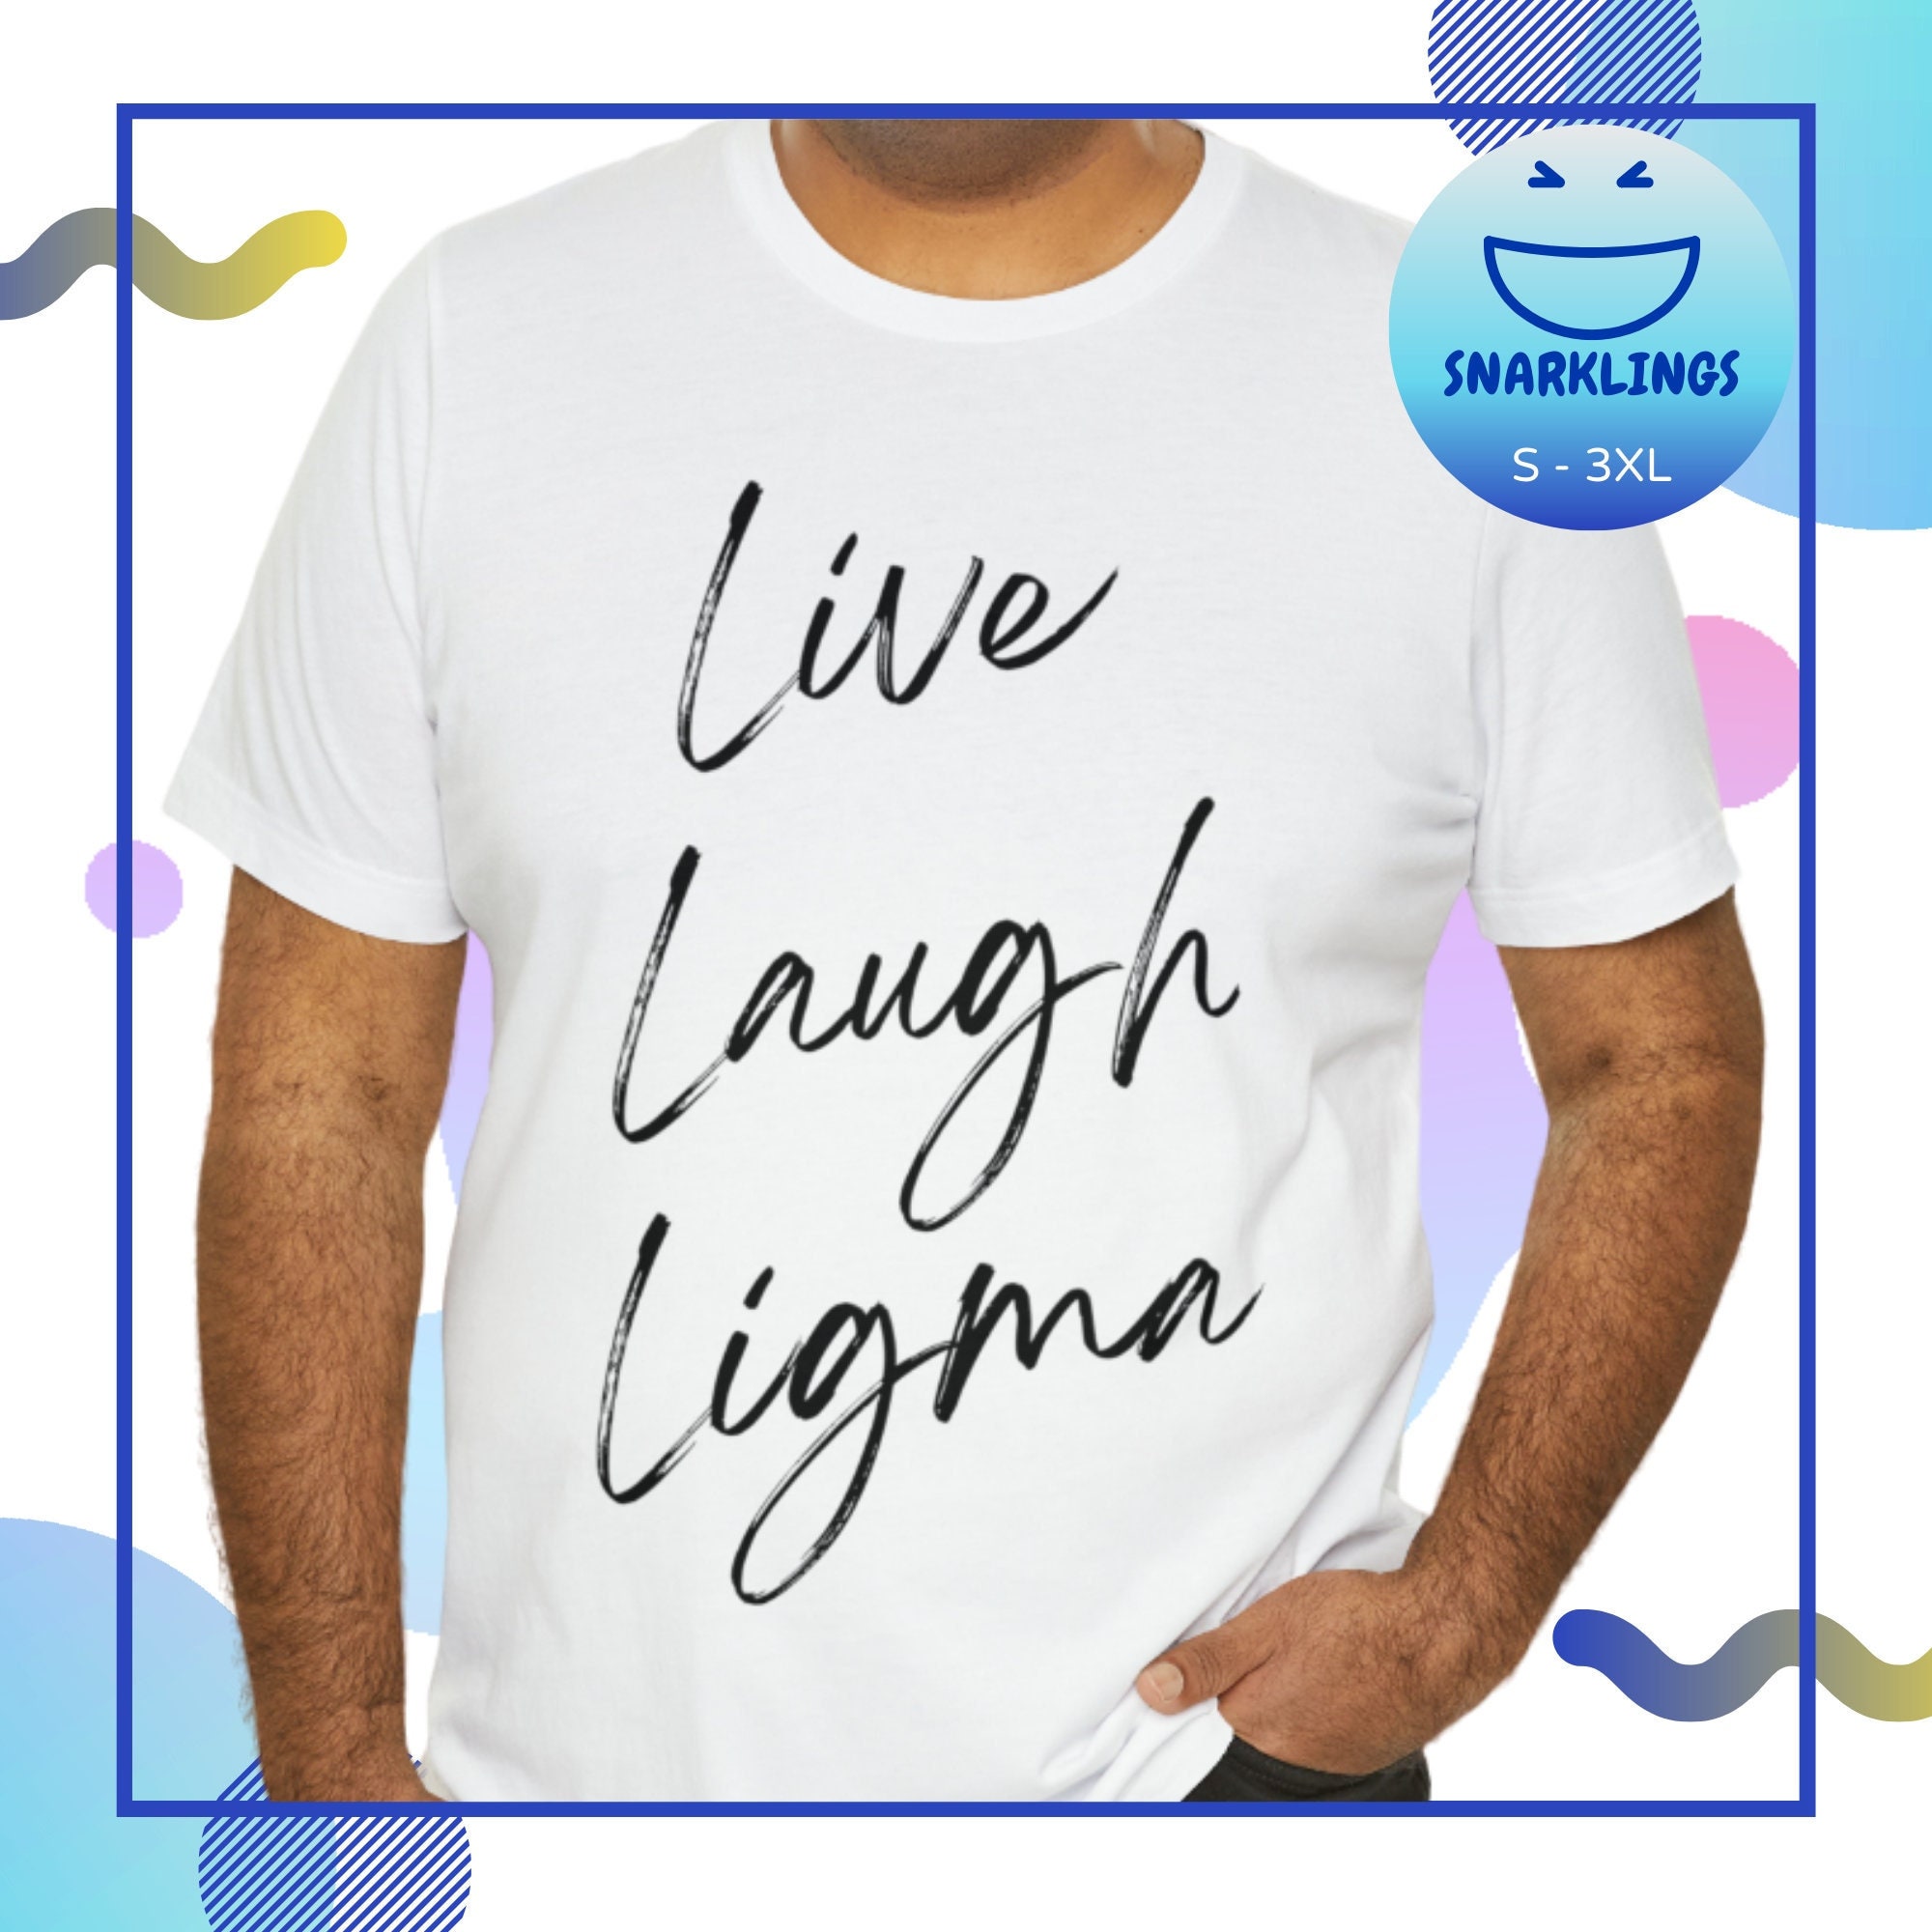 live laugh Ligma balls | Sticker